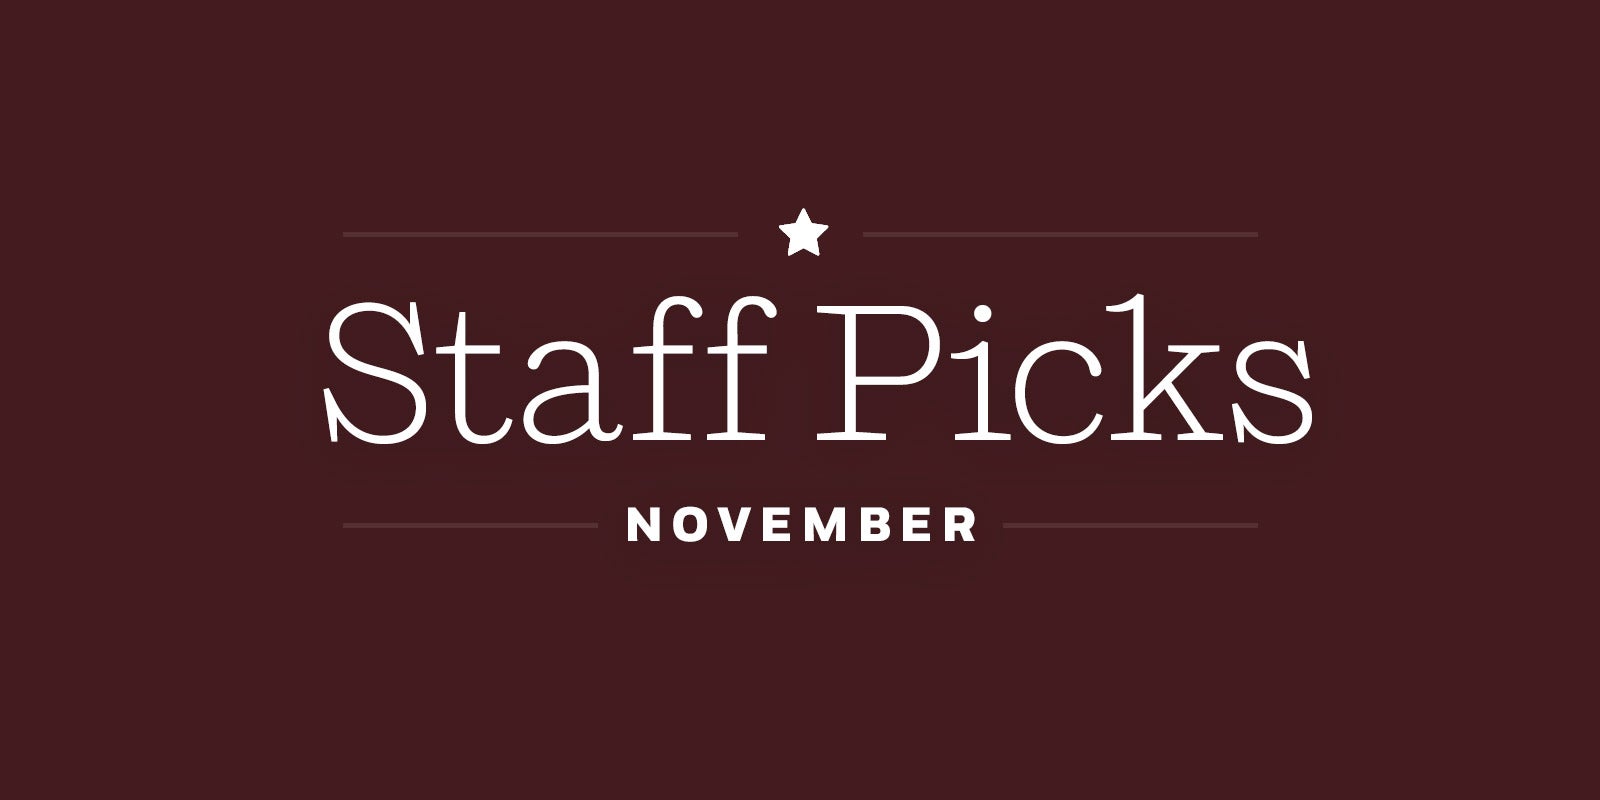 *Staff Picks For November*